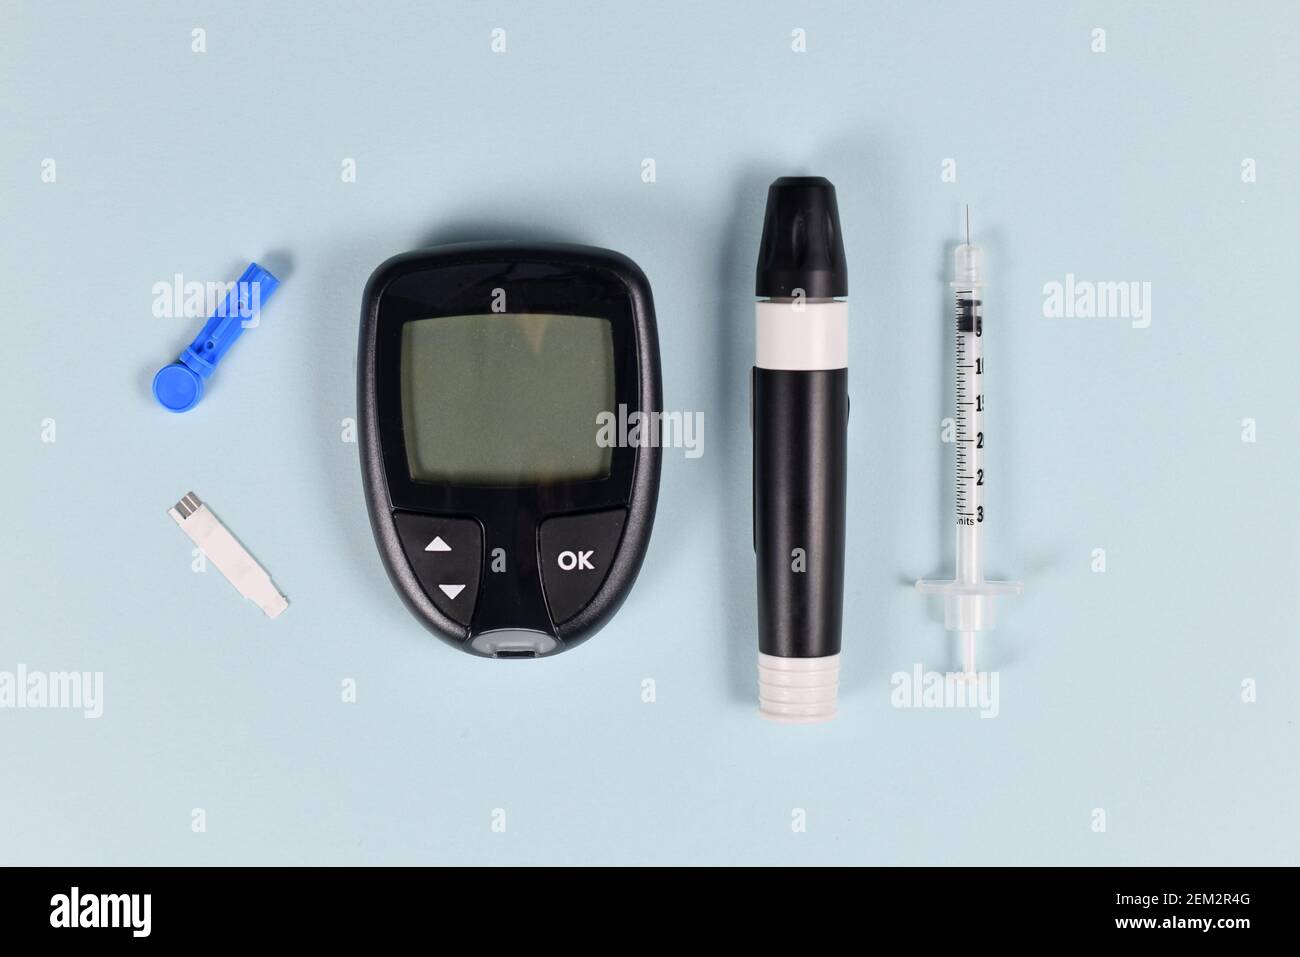 Équipement de traitement du diabète avec glucomètre, lancet, seringue et dispositif de lancing sur fond bleu Banque D'Images